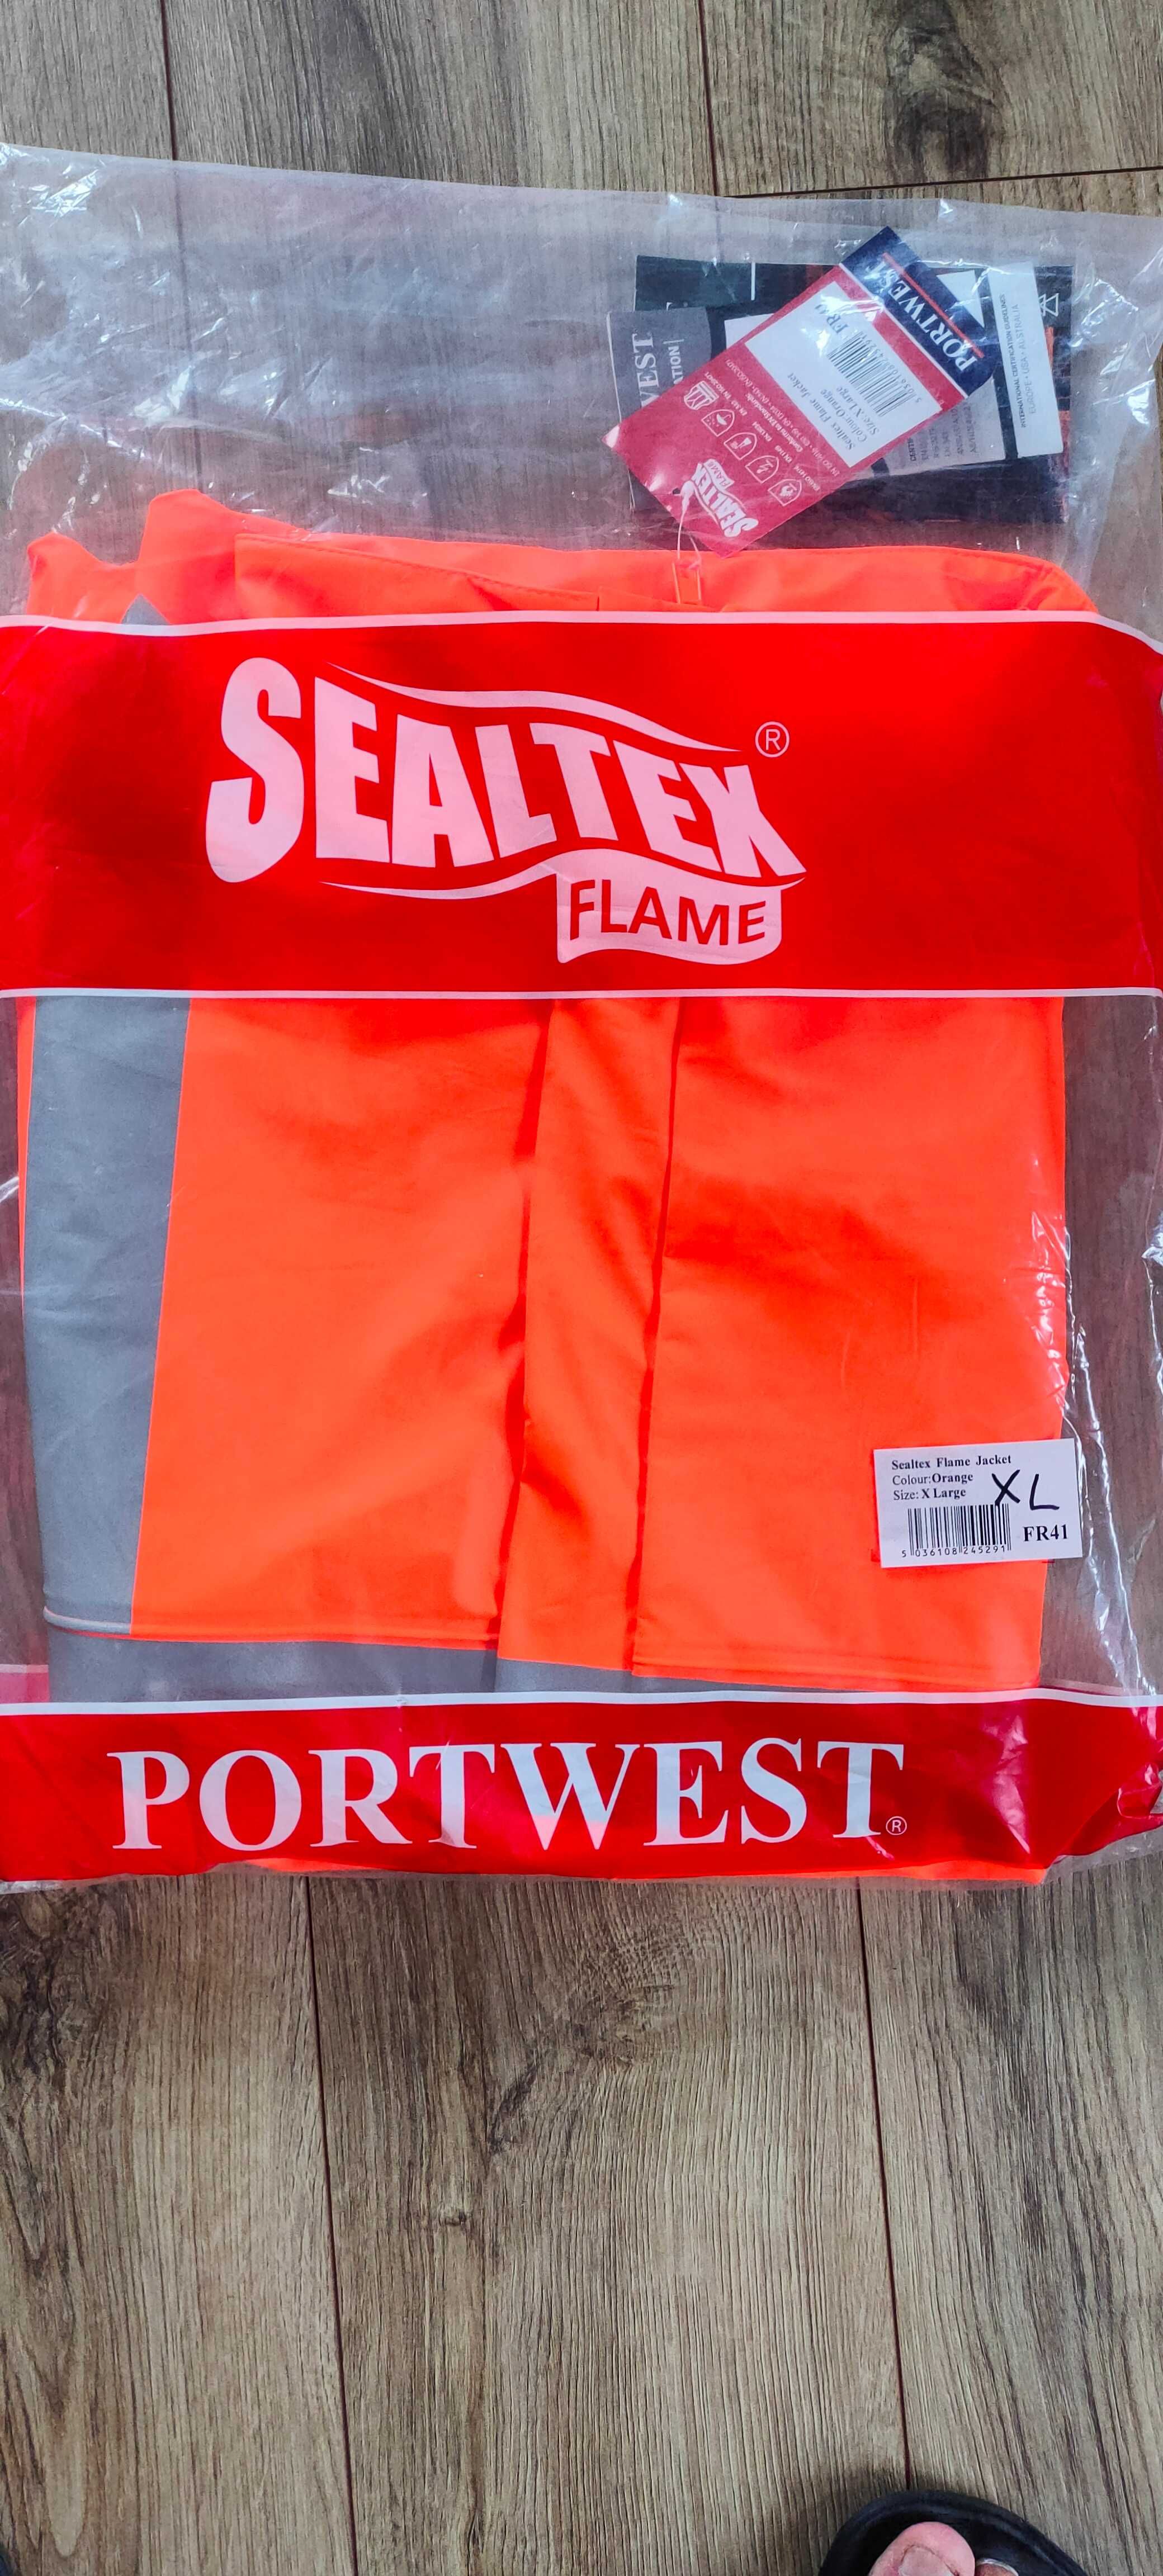 Portwest FR41 Kurtka ostrzegawcza Sealtex Flame pomarańczowy